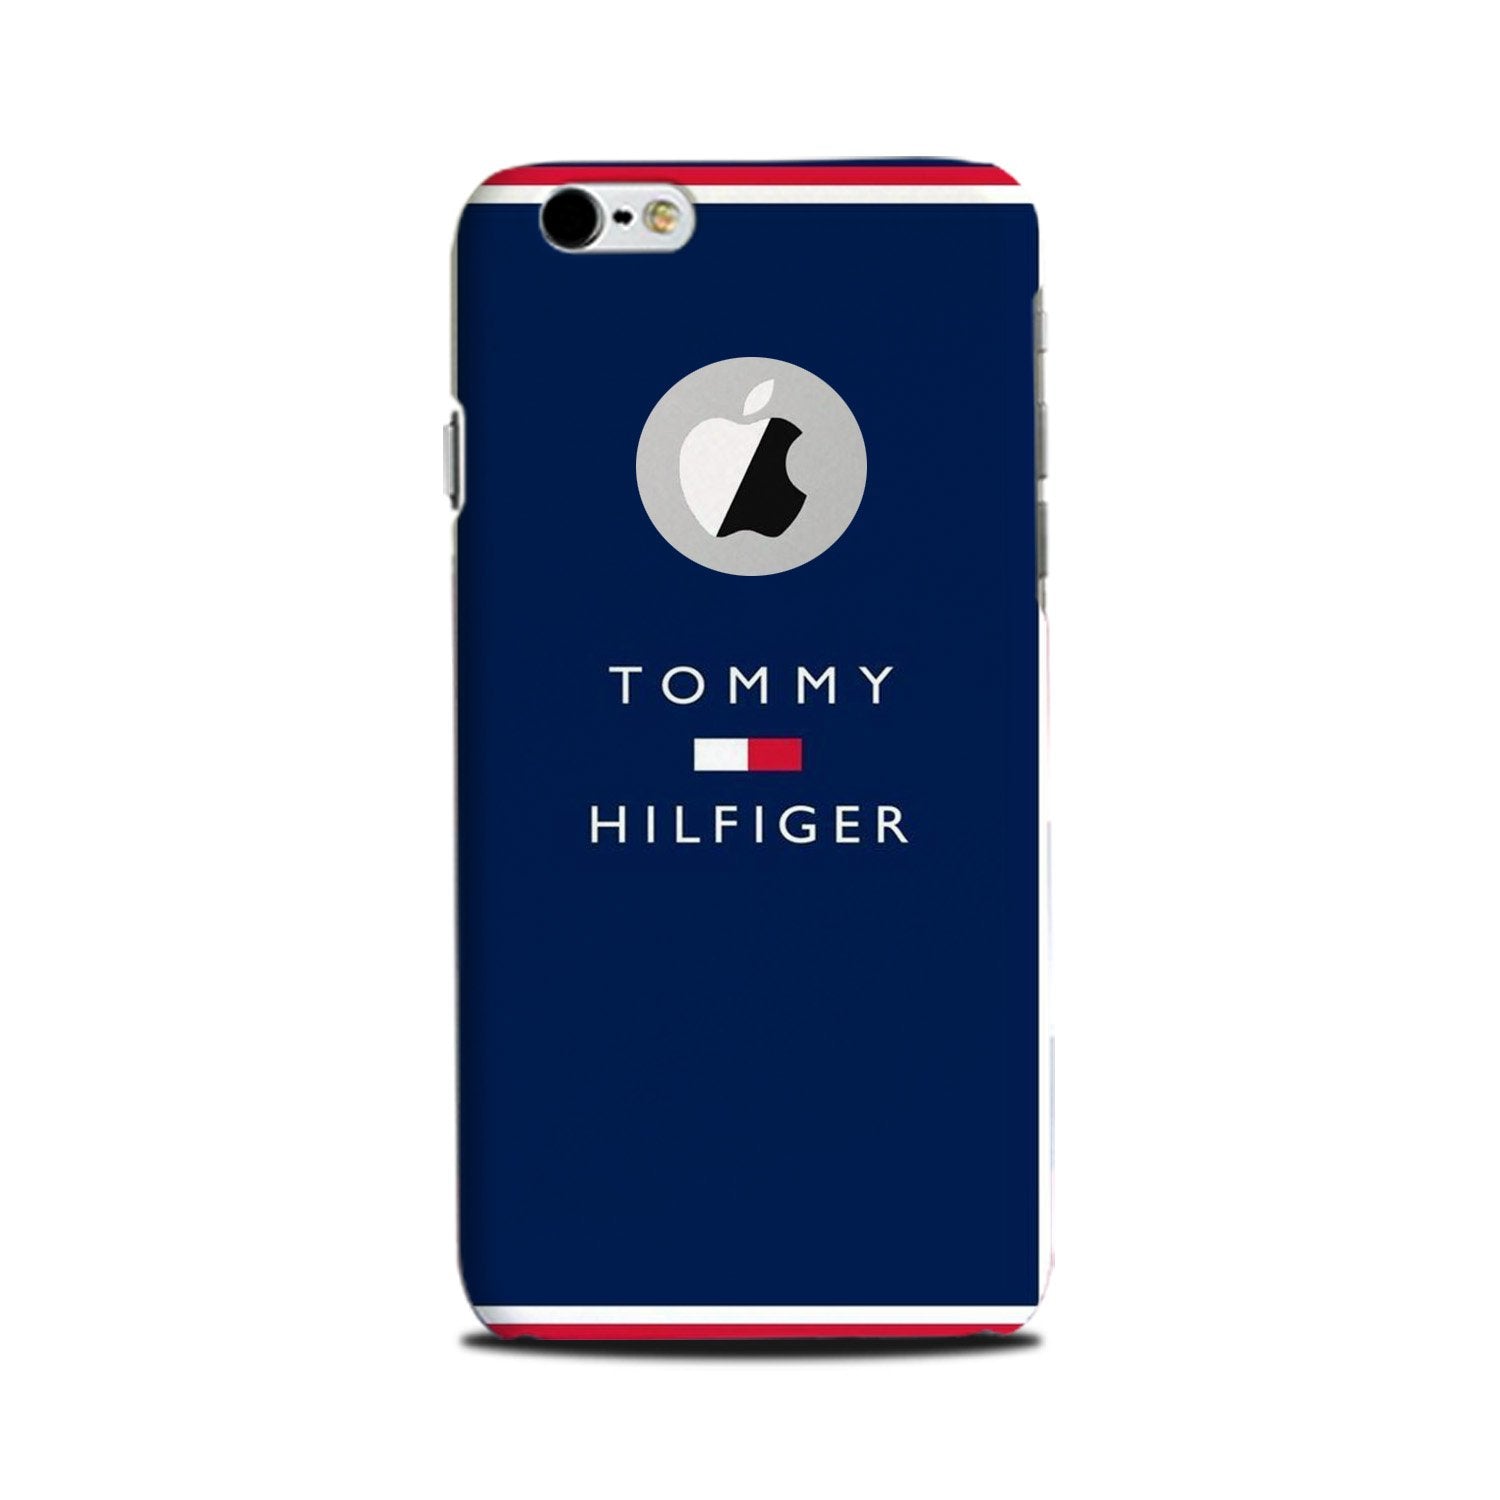 Tommy Hilfiger Case for iPhone 6 Plus / 6s Plus logo cut(Design No. 275)